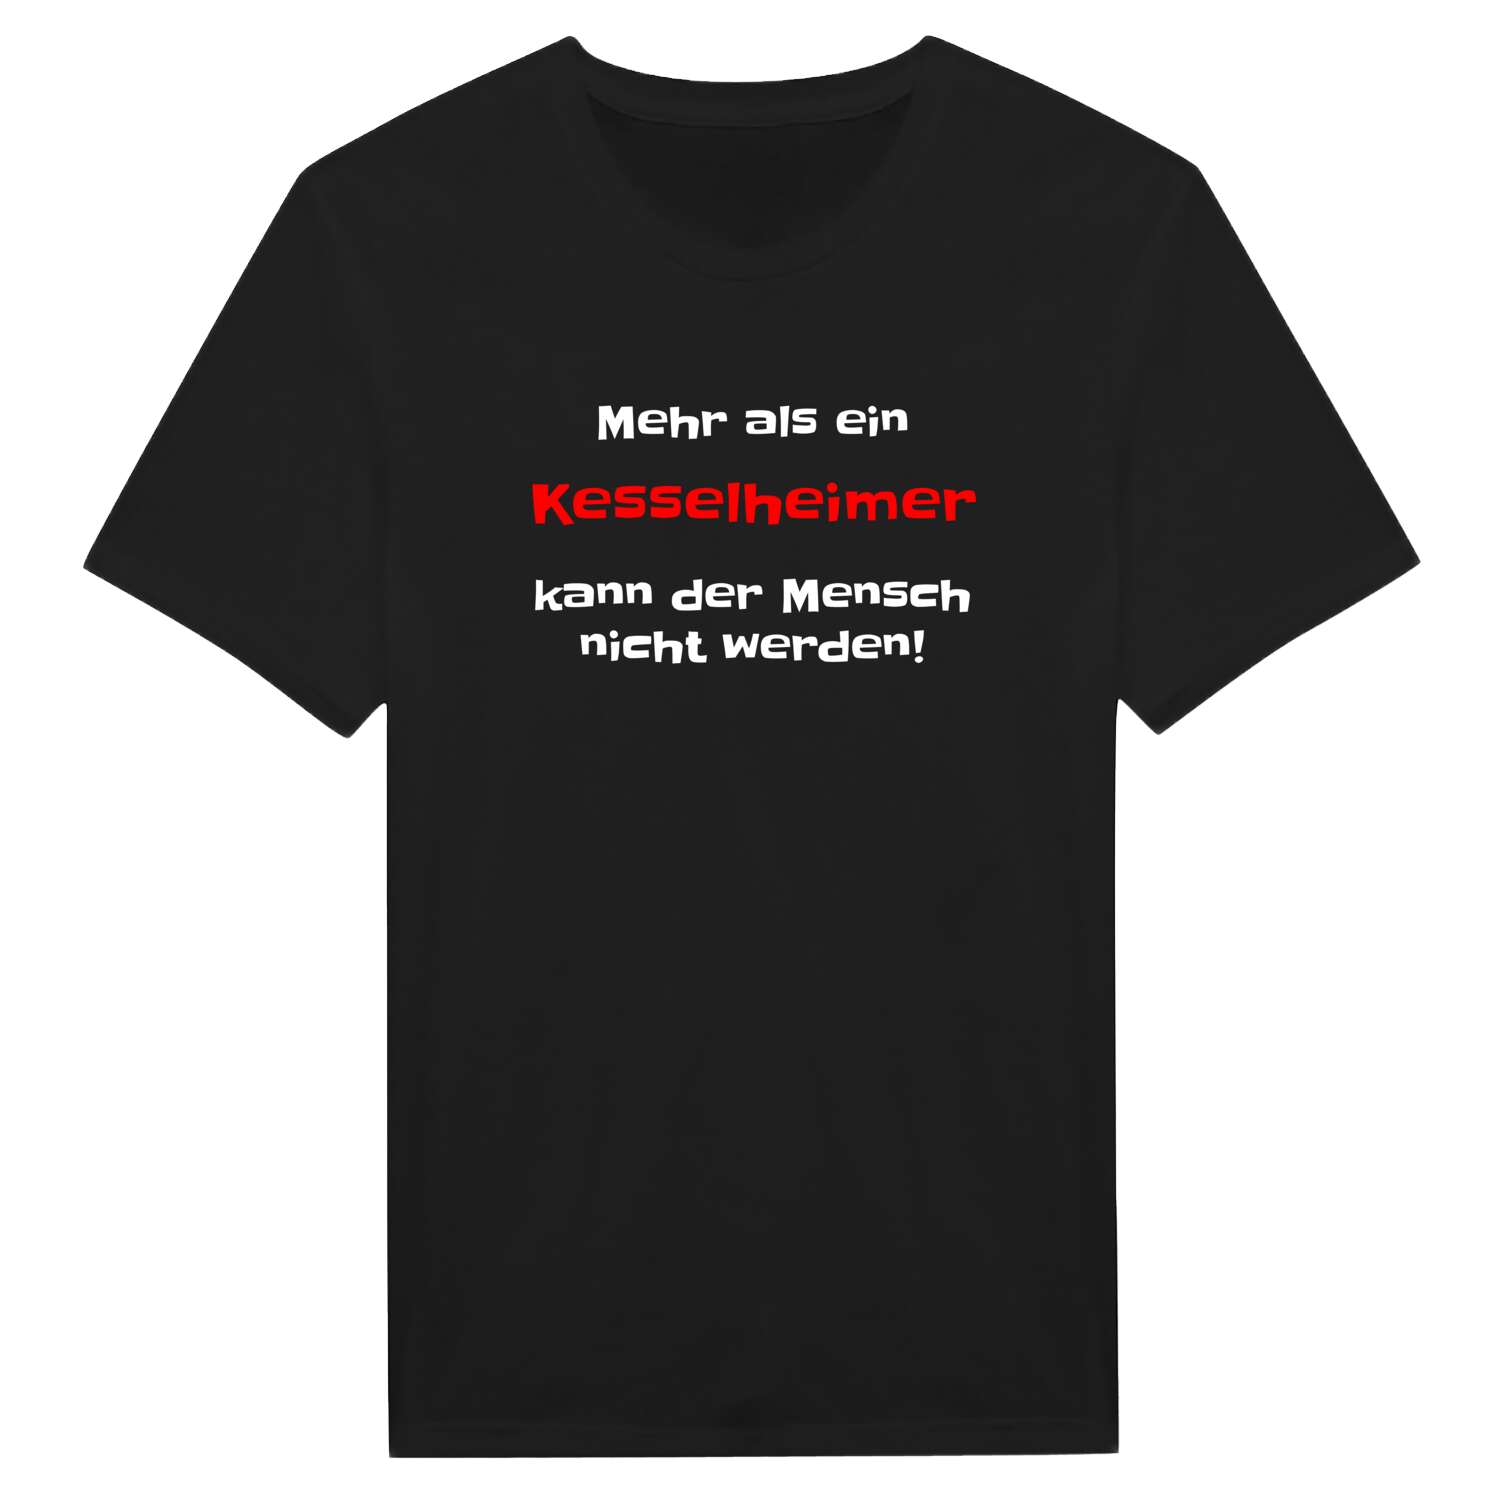 Kesselheim T-Shirt »Mehr als ein«